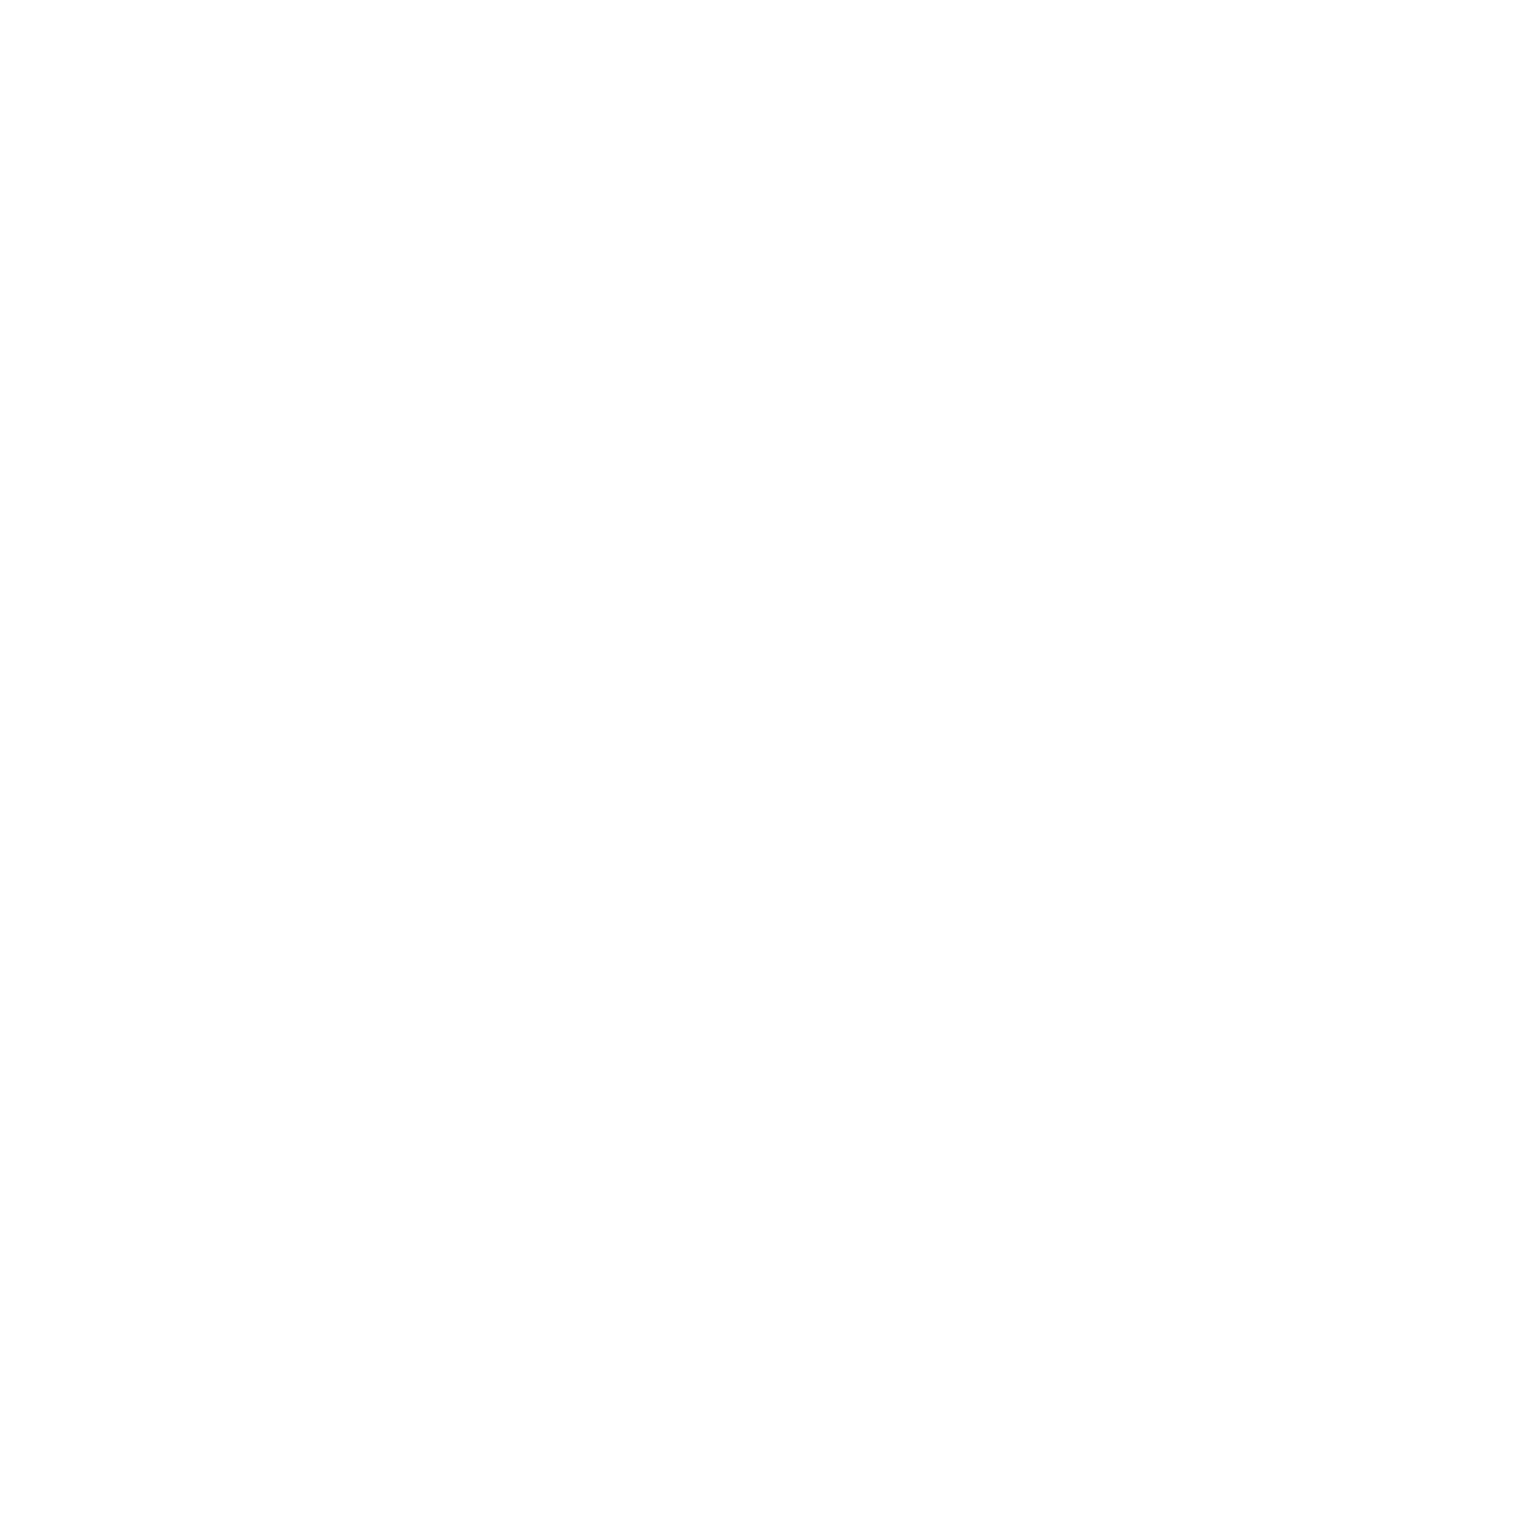 Matson logo for dark backgrounds (transparent PNG)